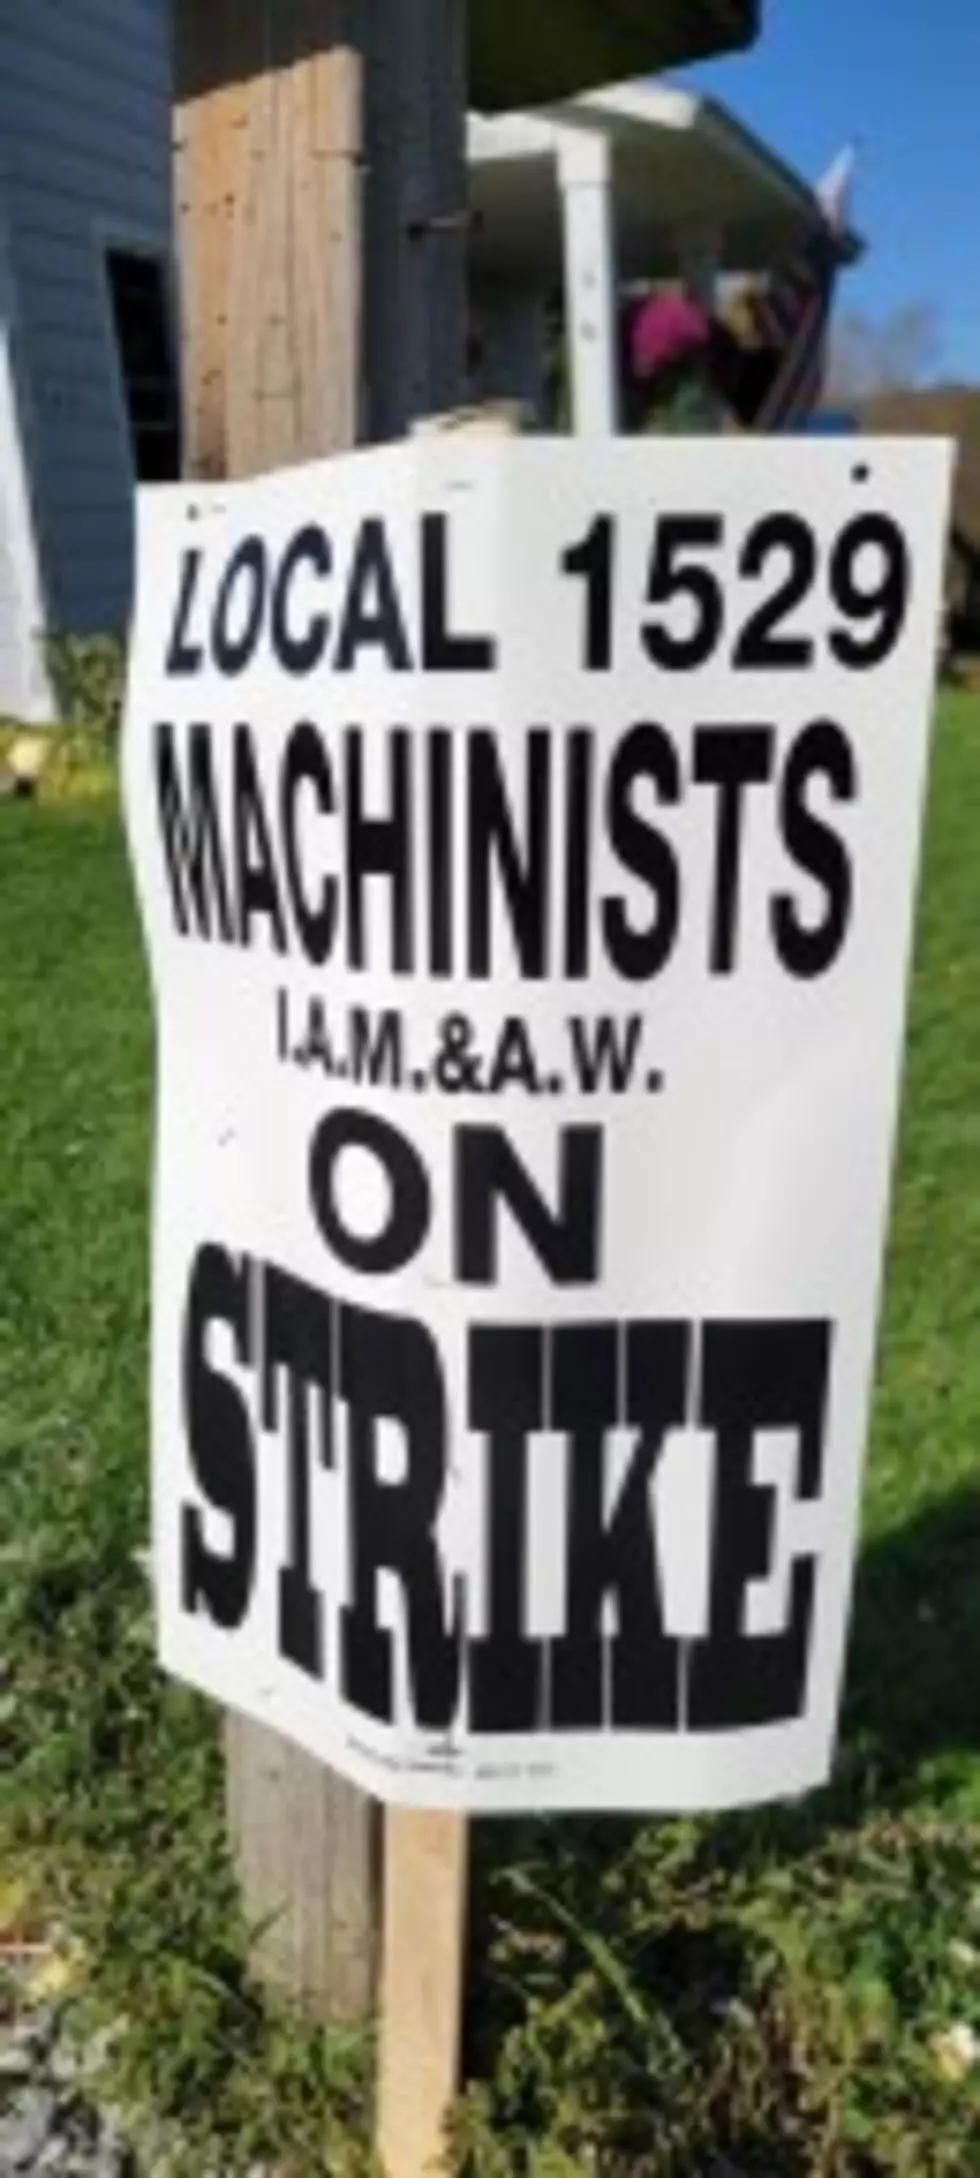 Amphenol Workers Strike